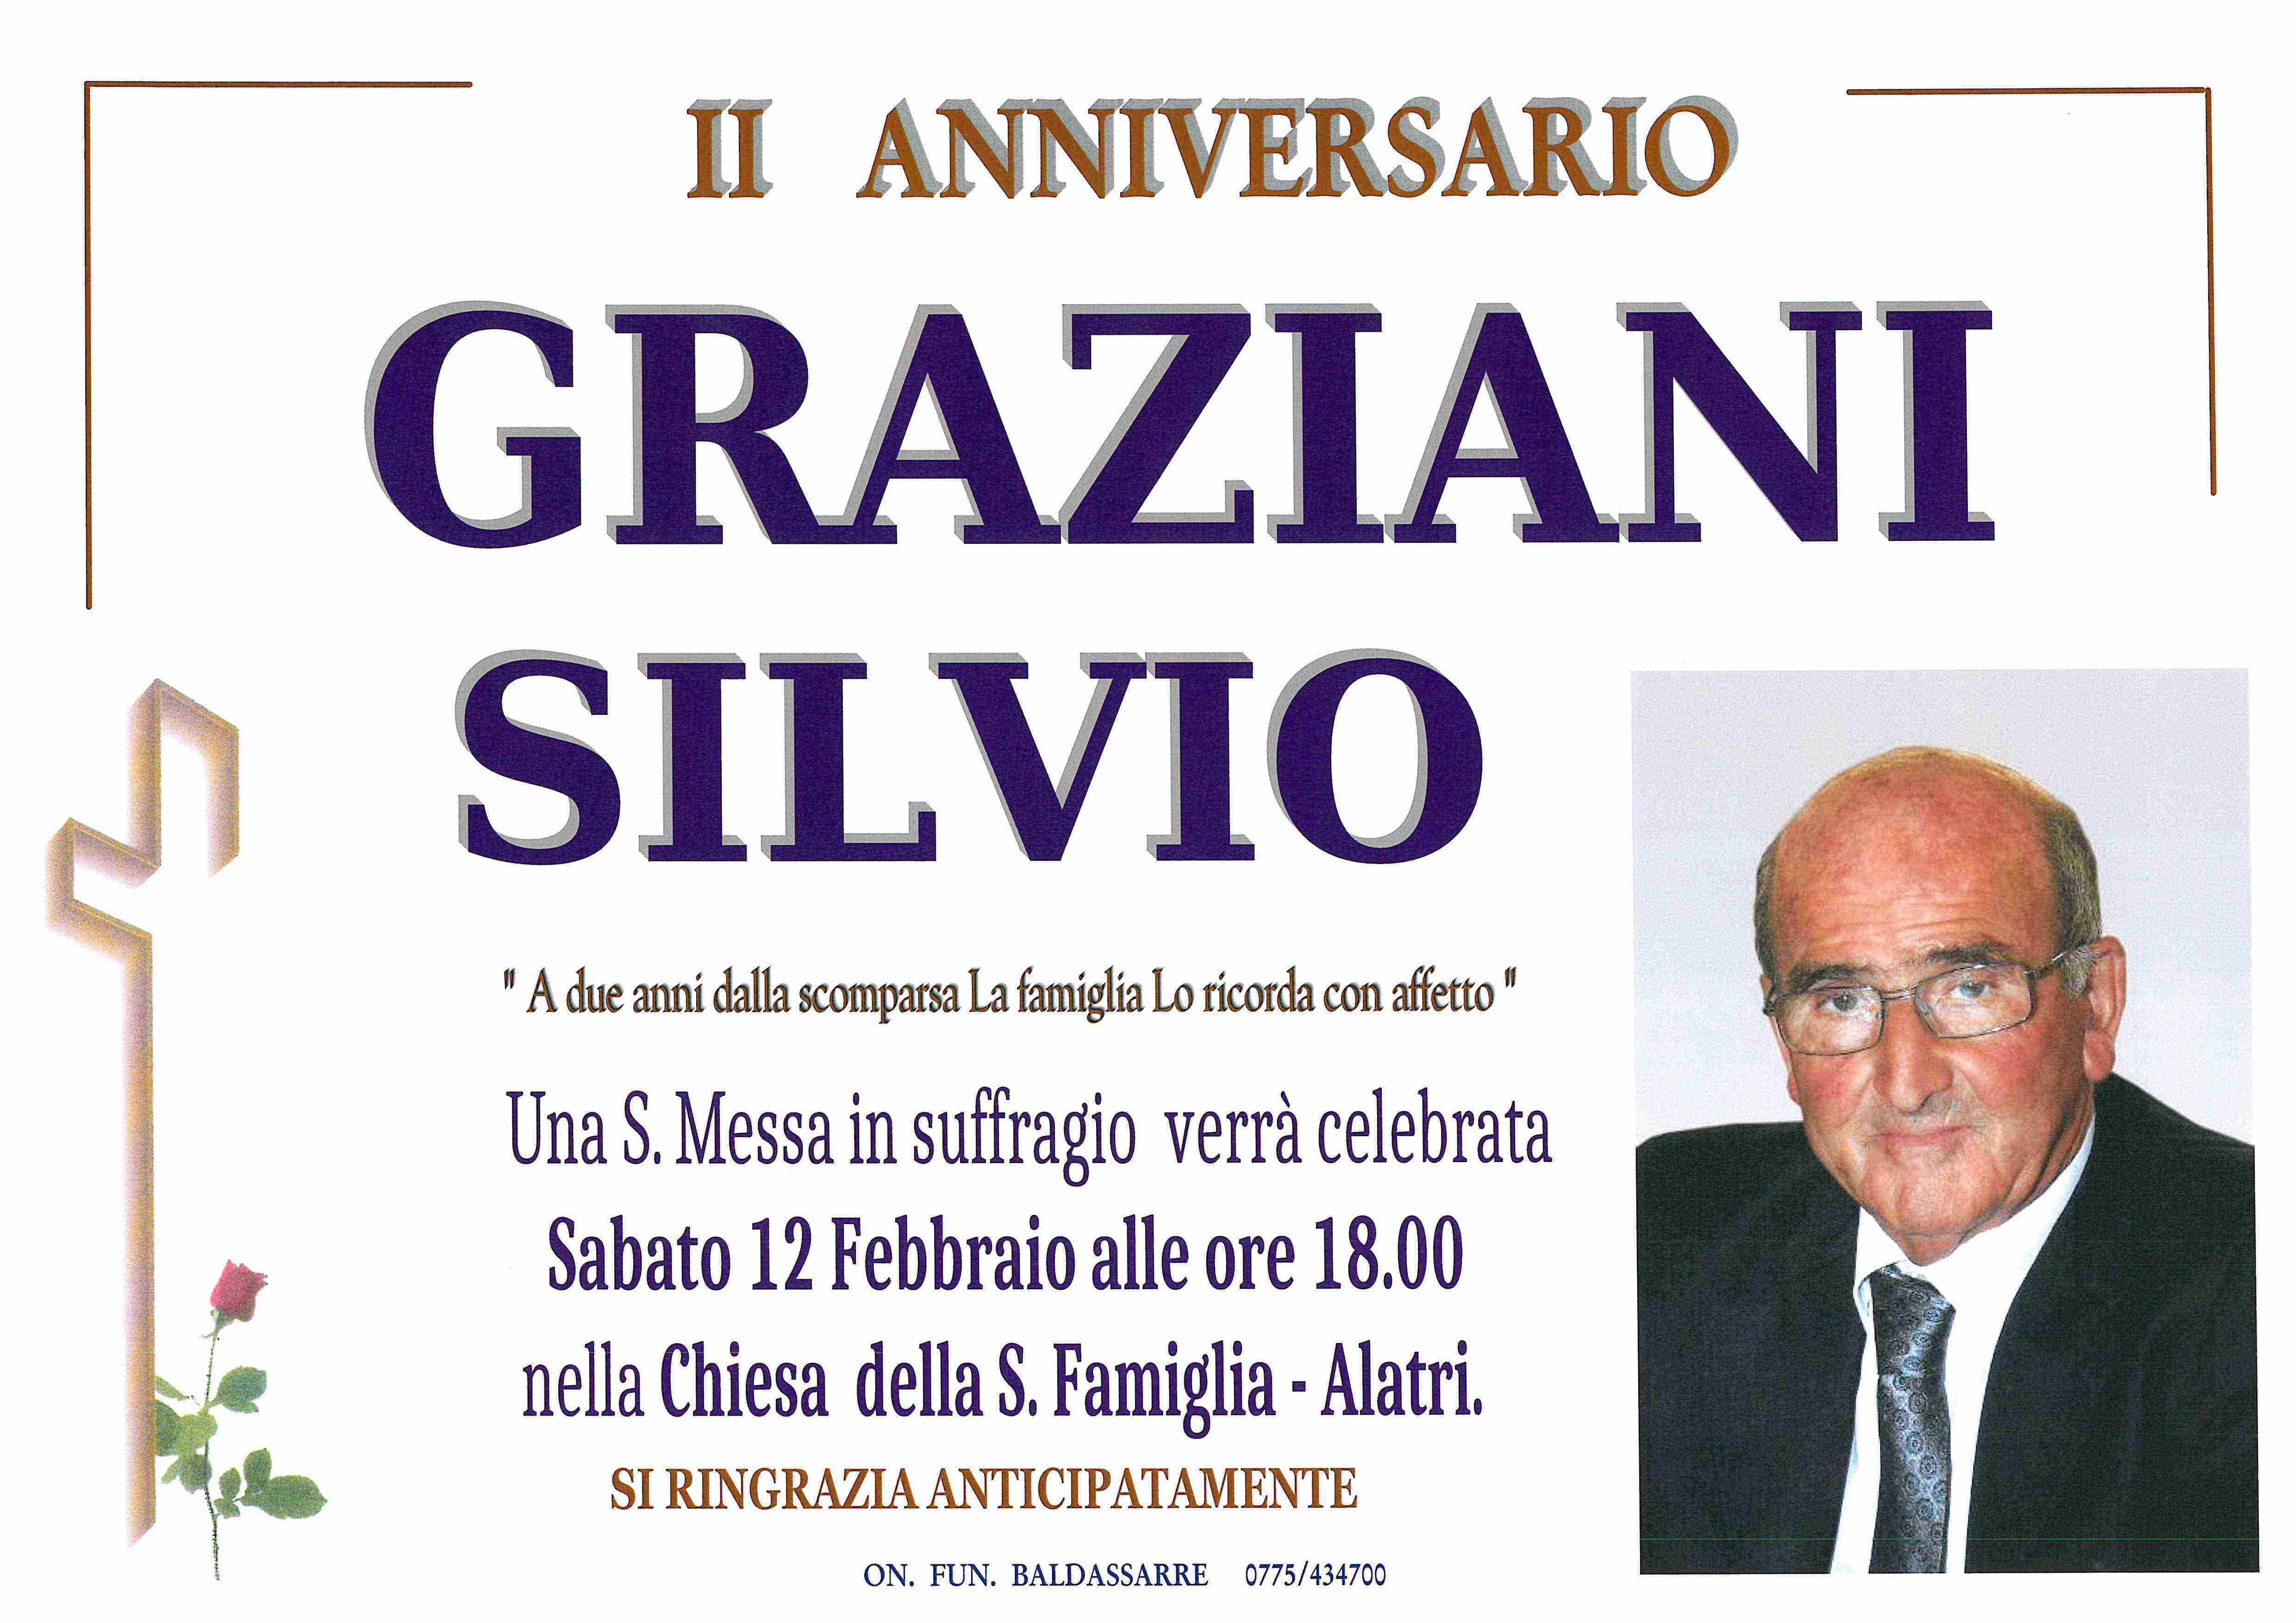 Silvio Graziani